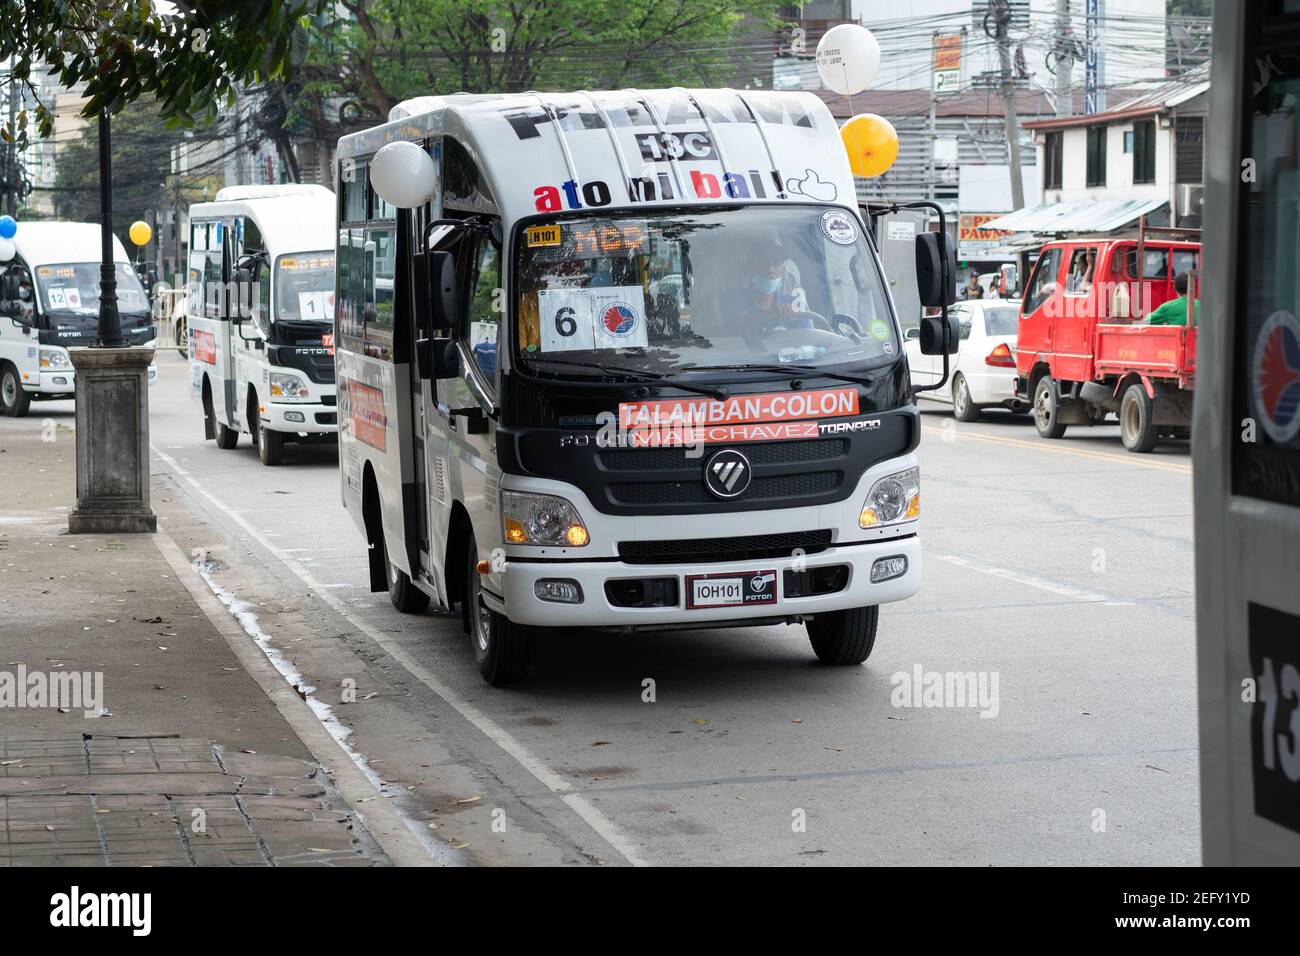 18th. Februar 2021.EIN modernes Fahrzeug des öffentlichen Nahverkehrs im neuen Stil, eines von 38 Fahrzeugen, die den alten Jeepney in Cebu City, Philippinen, ersetzen Stockfoto